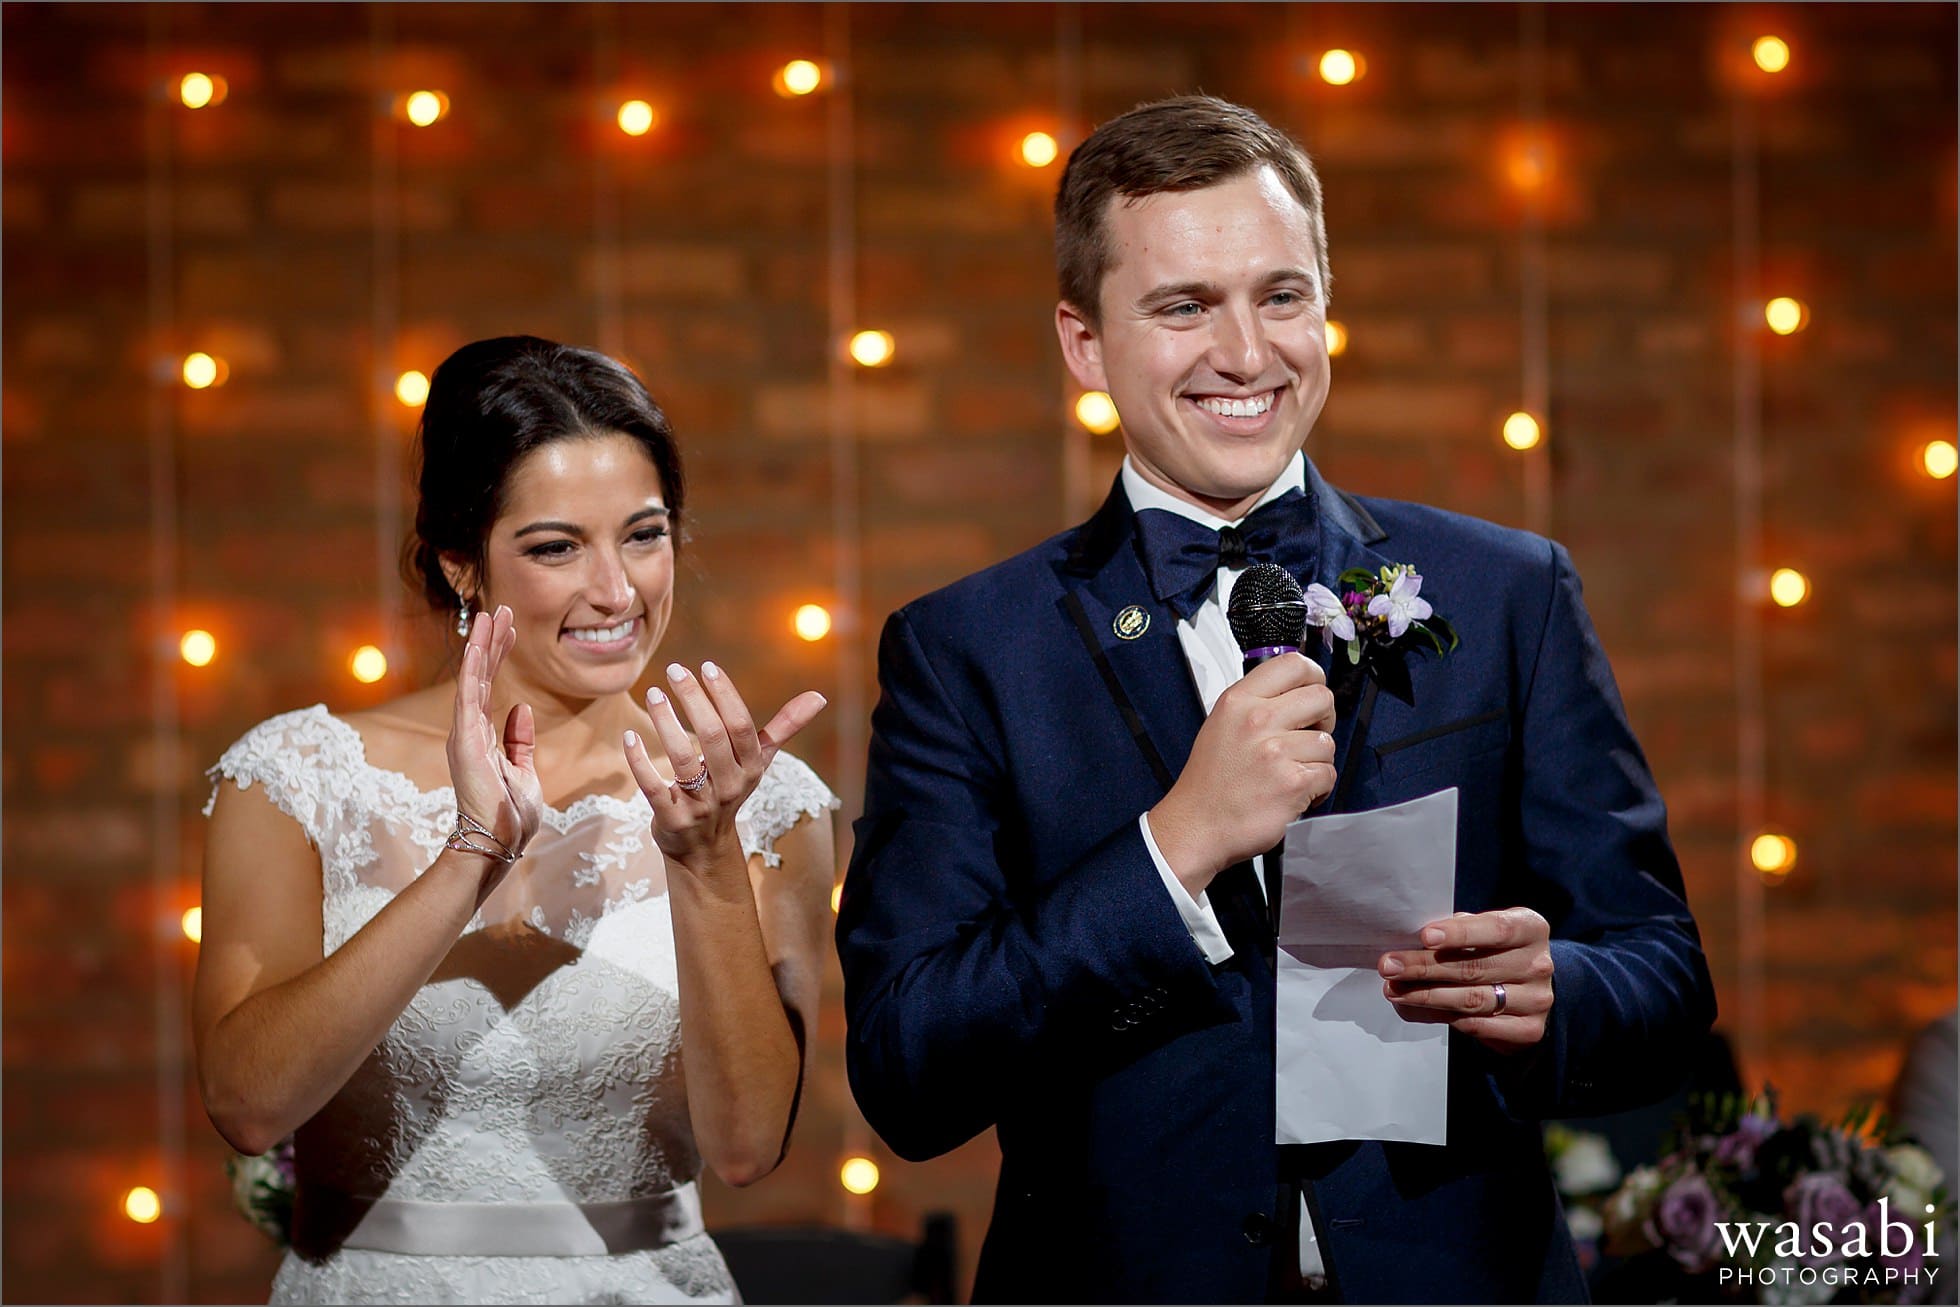 couple toast speech wedding photos